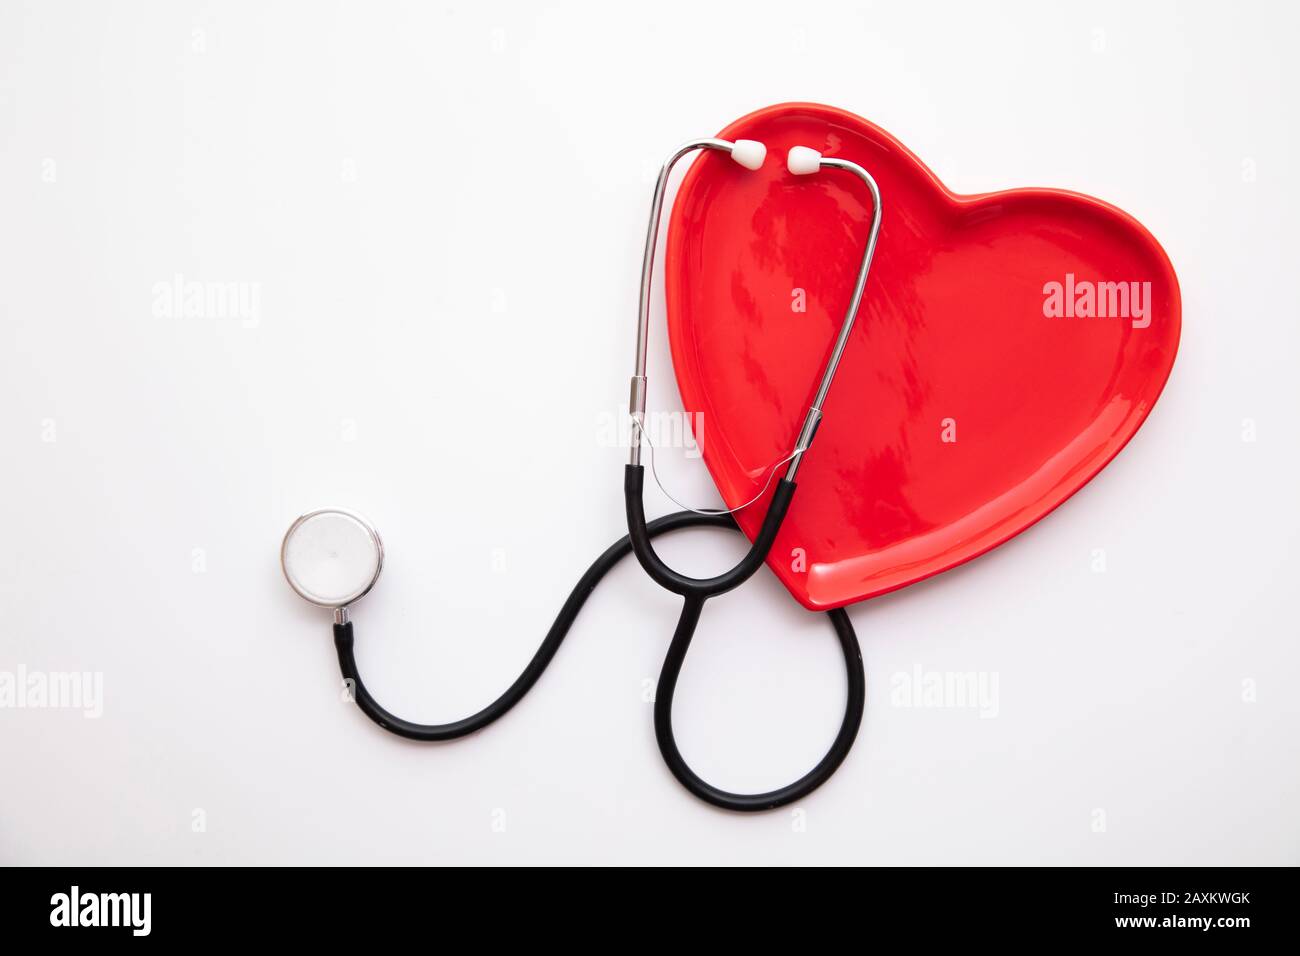 Rote Herzform mit Stethoskop. Gesundes Herzkonzept Stockfoto